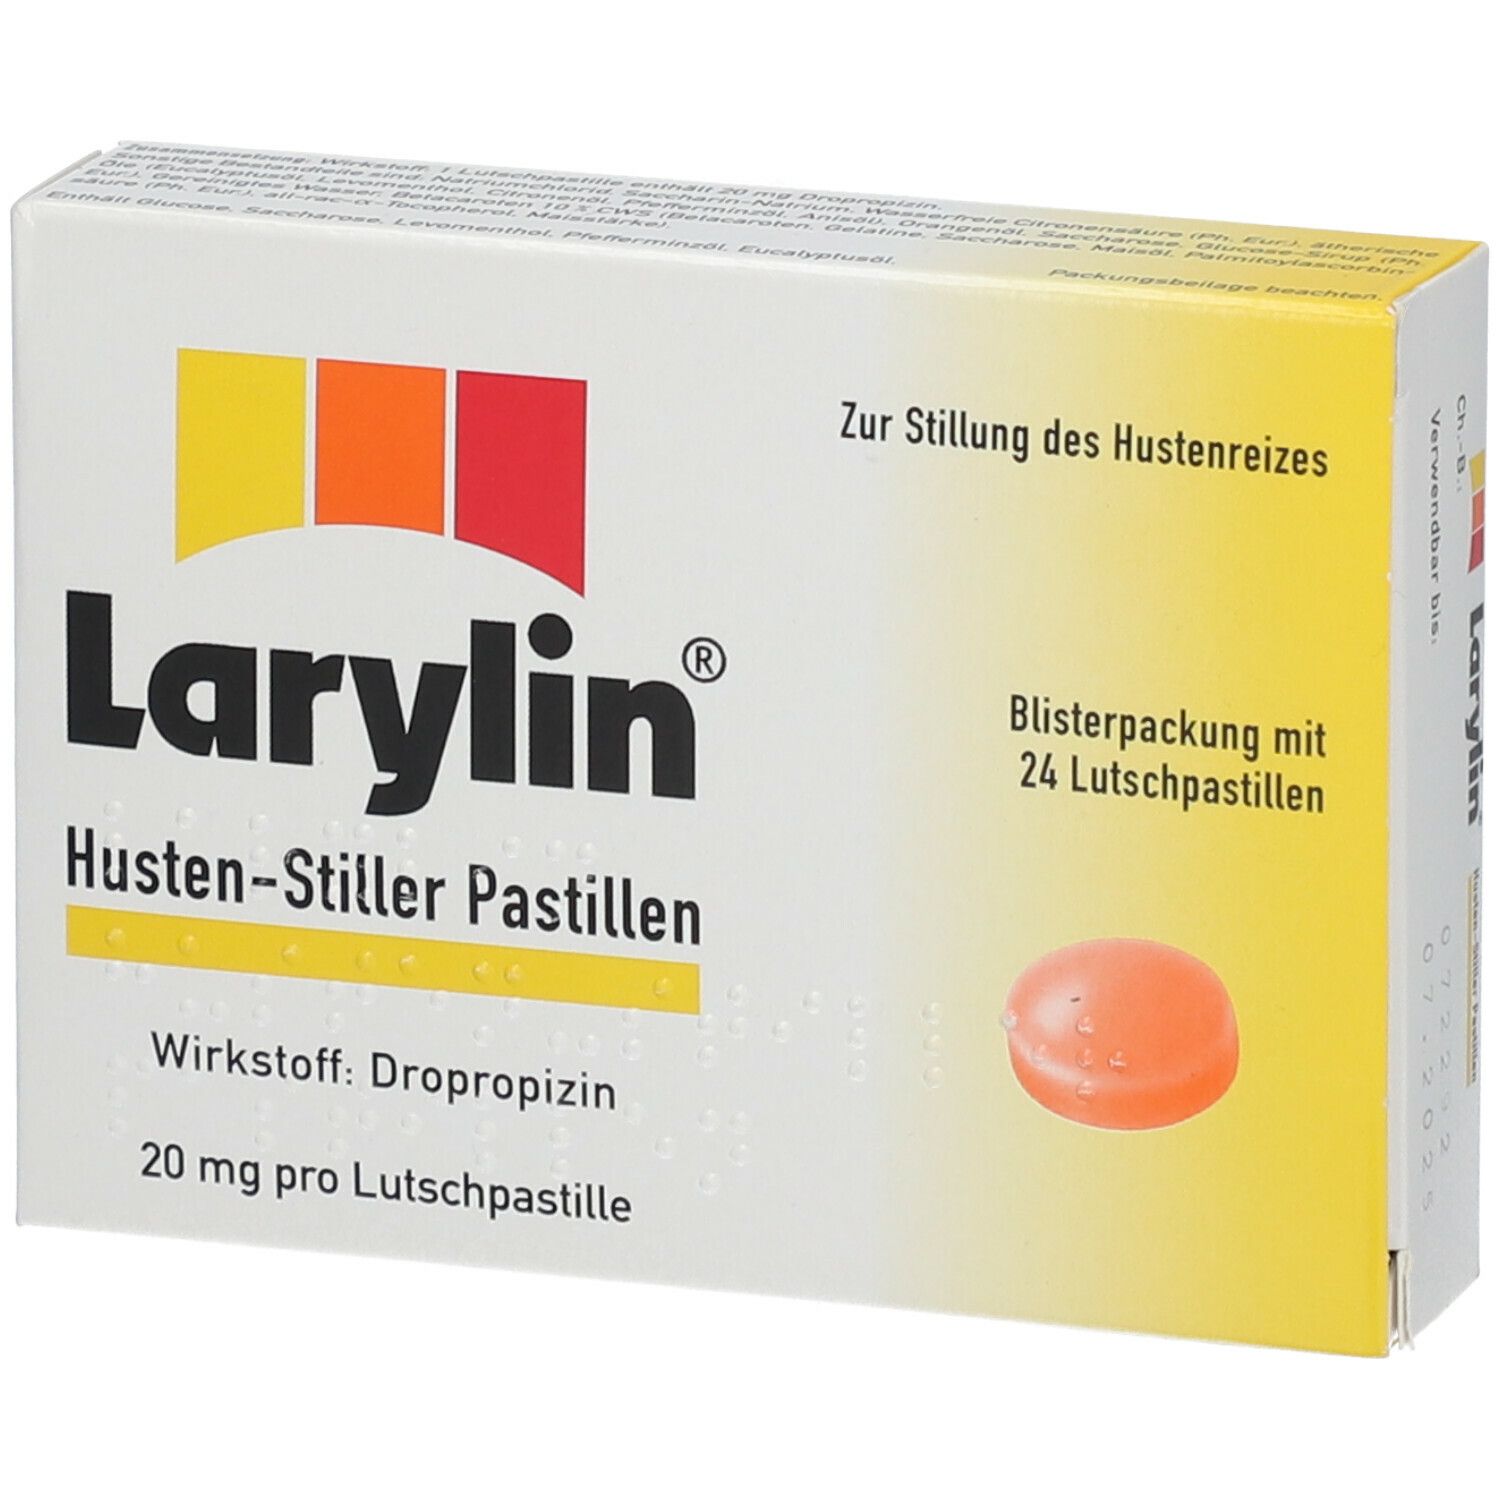 Larylin® Husten-Stiller Pastillen